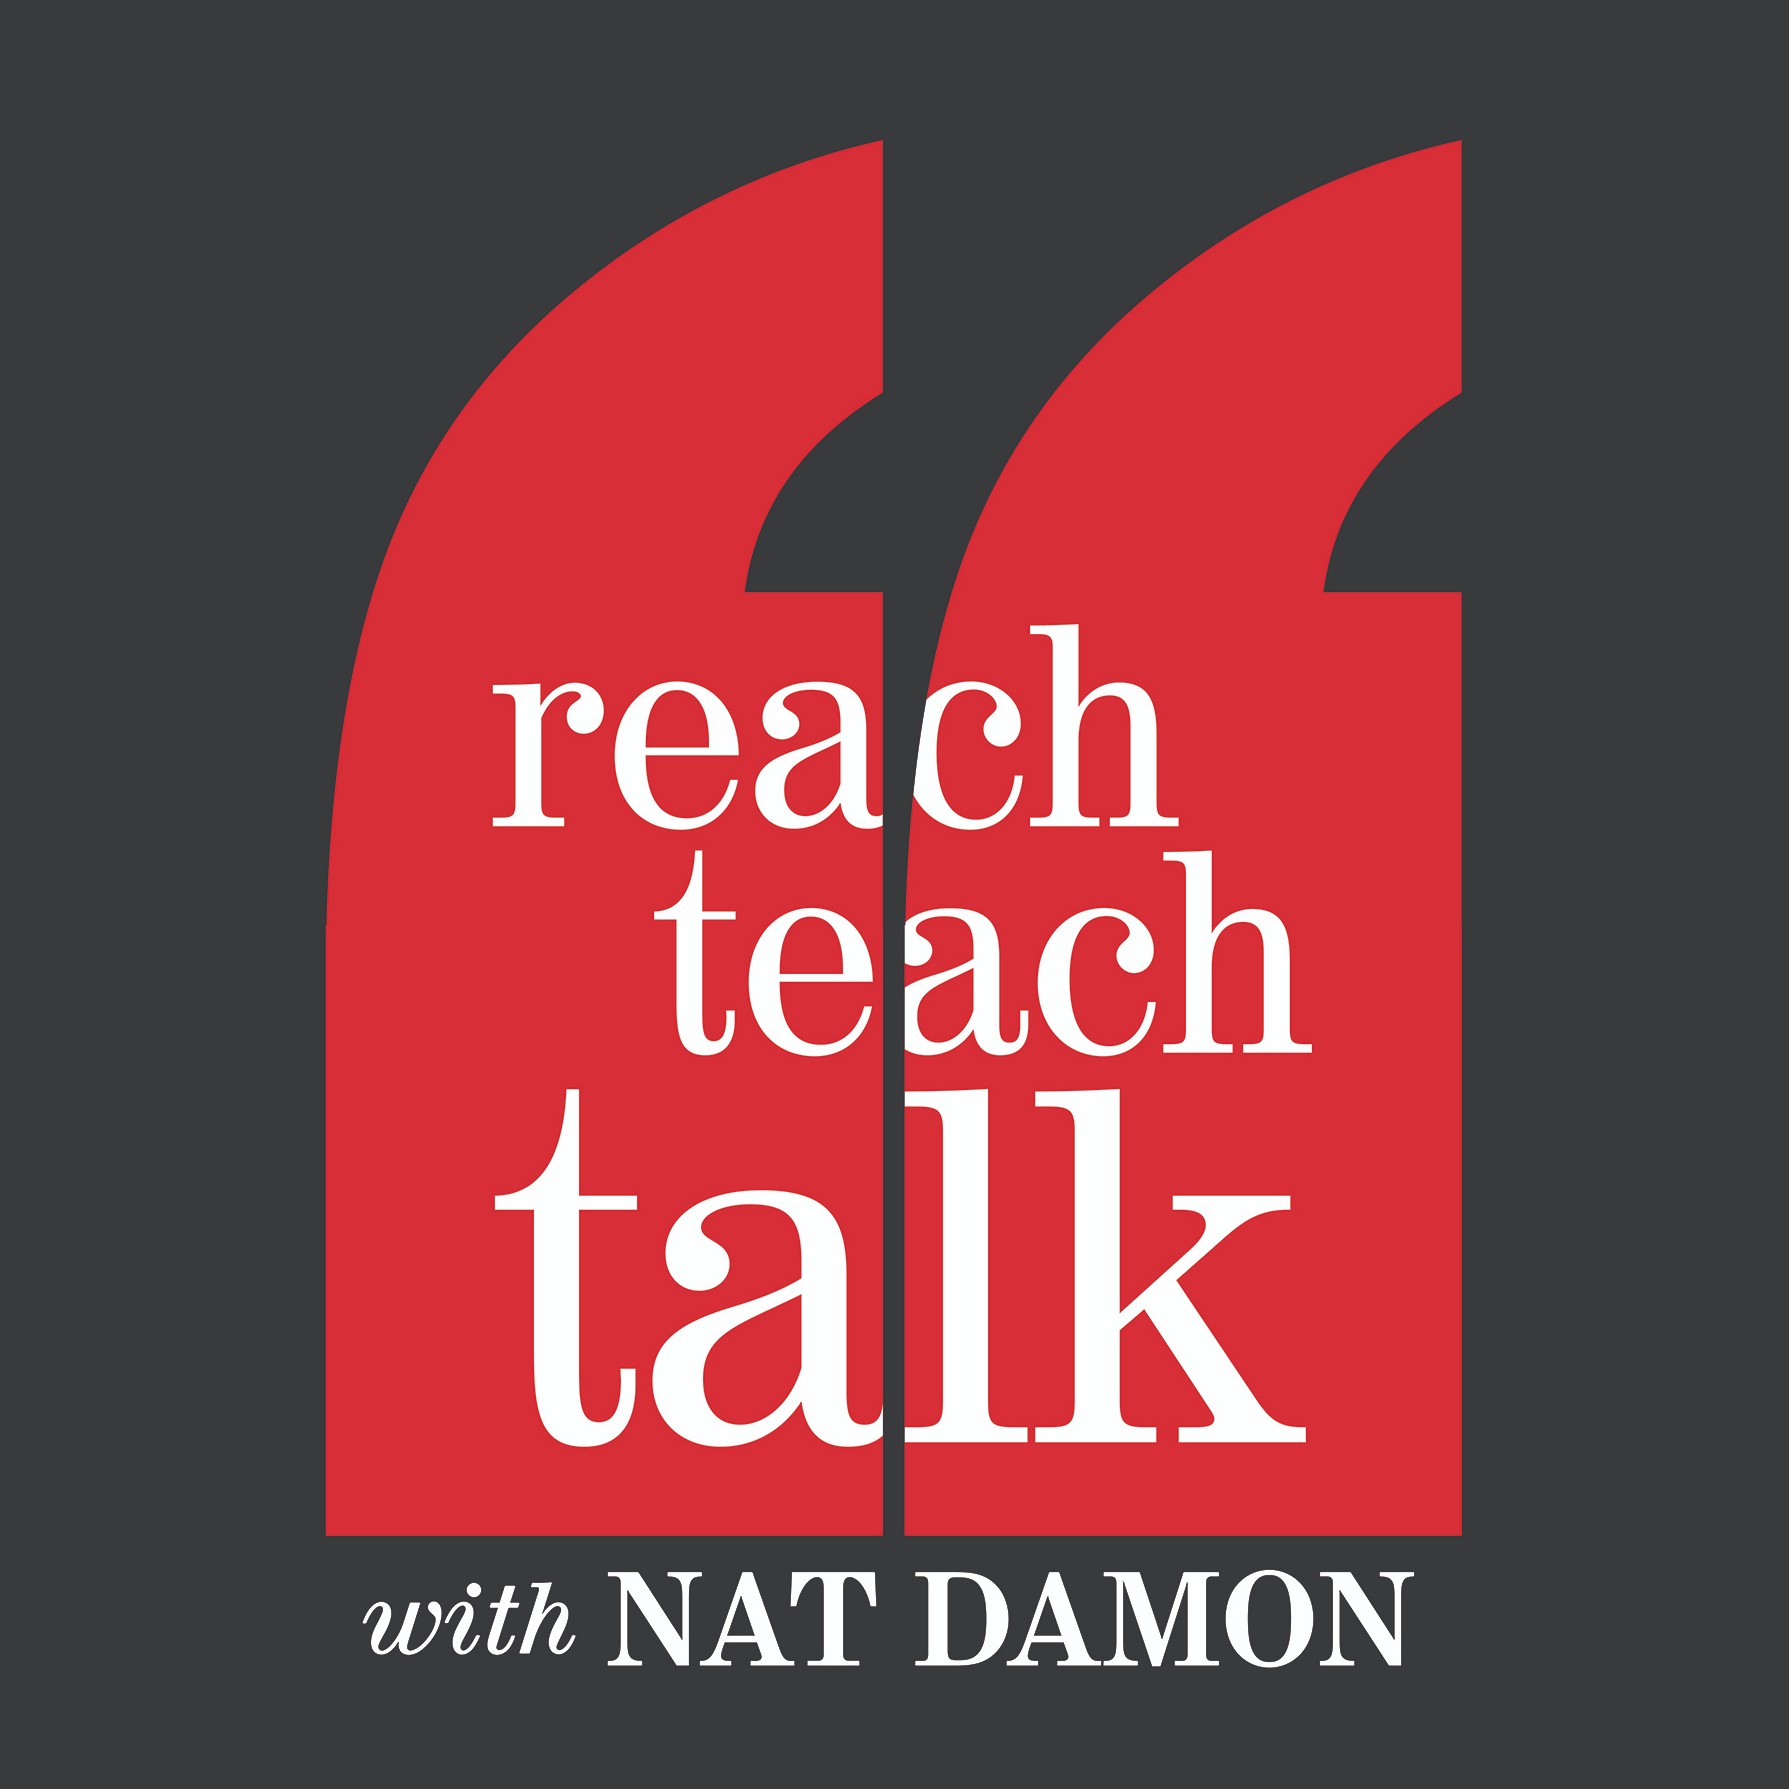 Reach. Teach. Talk. With Nat Damon